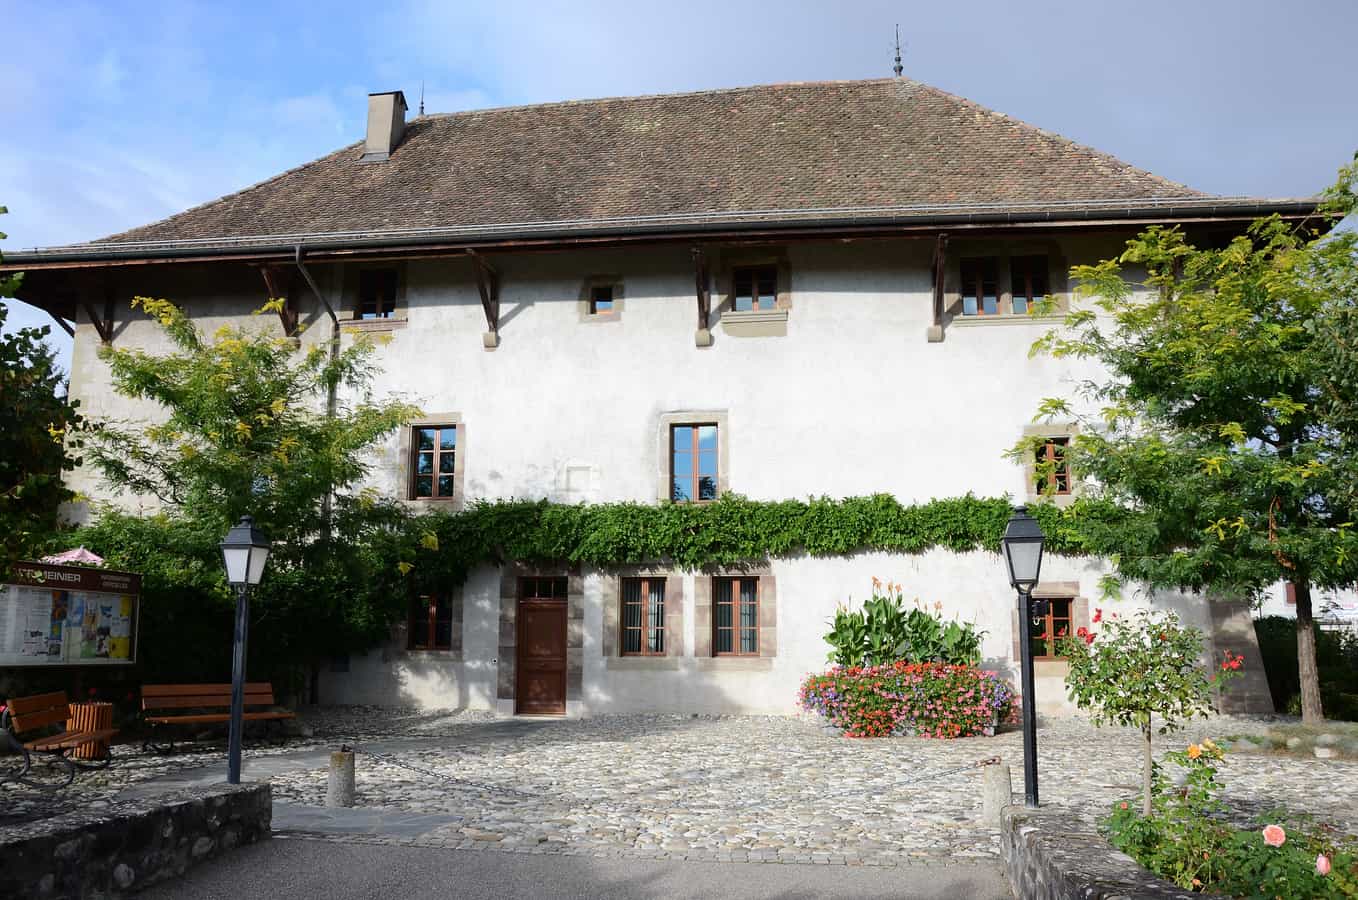 Maison fortifiée La Tour (Mairie), Route de Gy 17, Genève